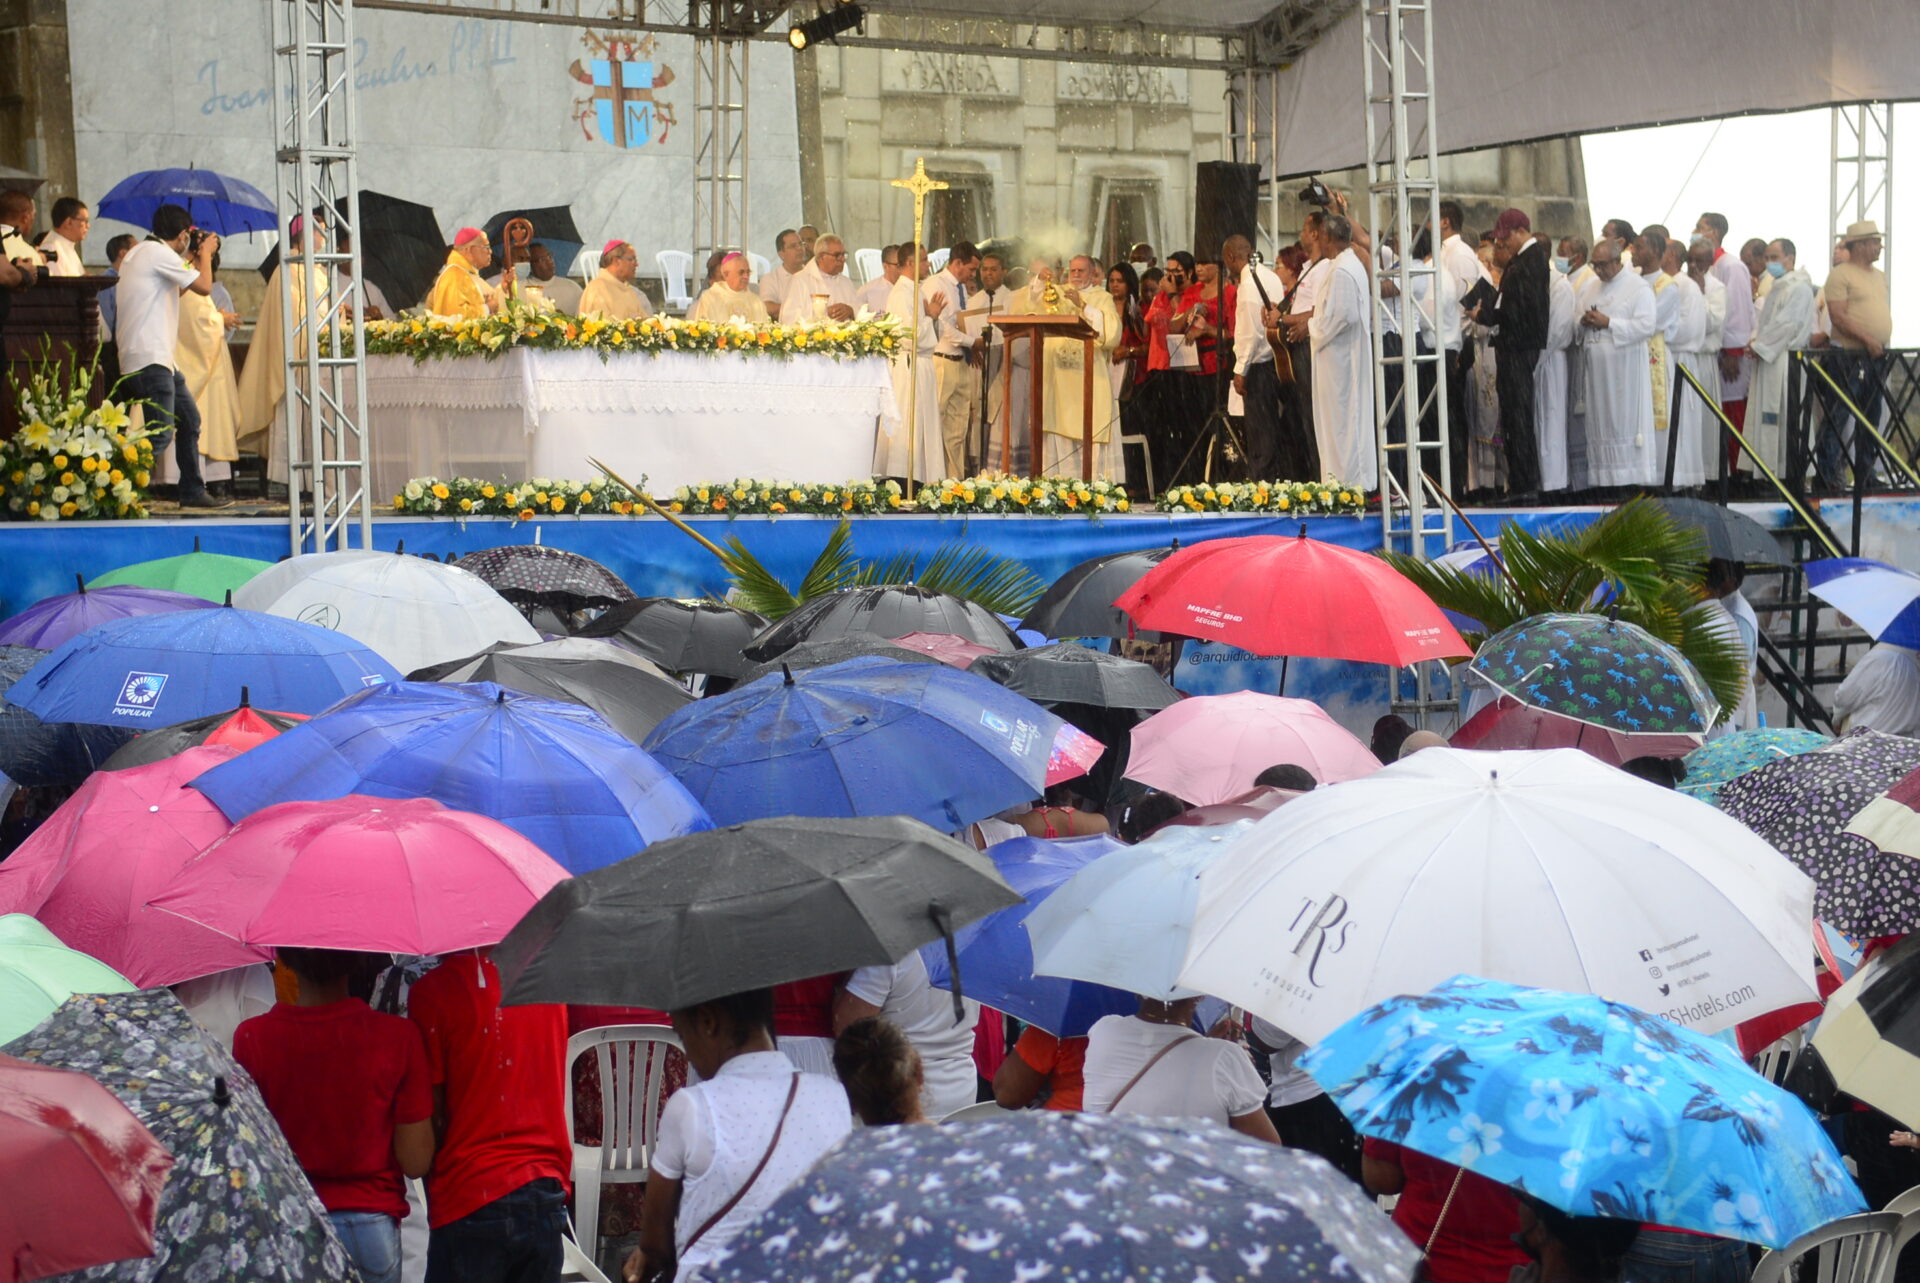 Igelsia catolica realiza eucaristia en el Faro Colon. Foto: Johnny Rotestan